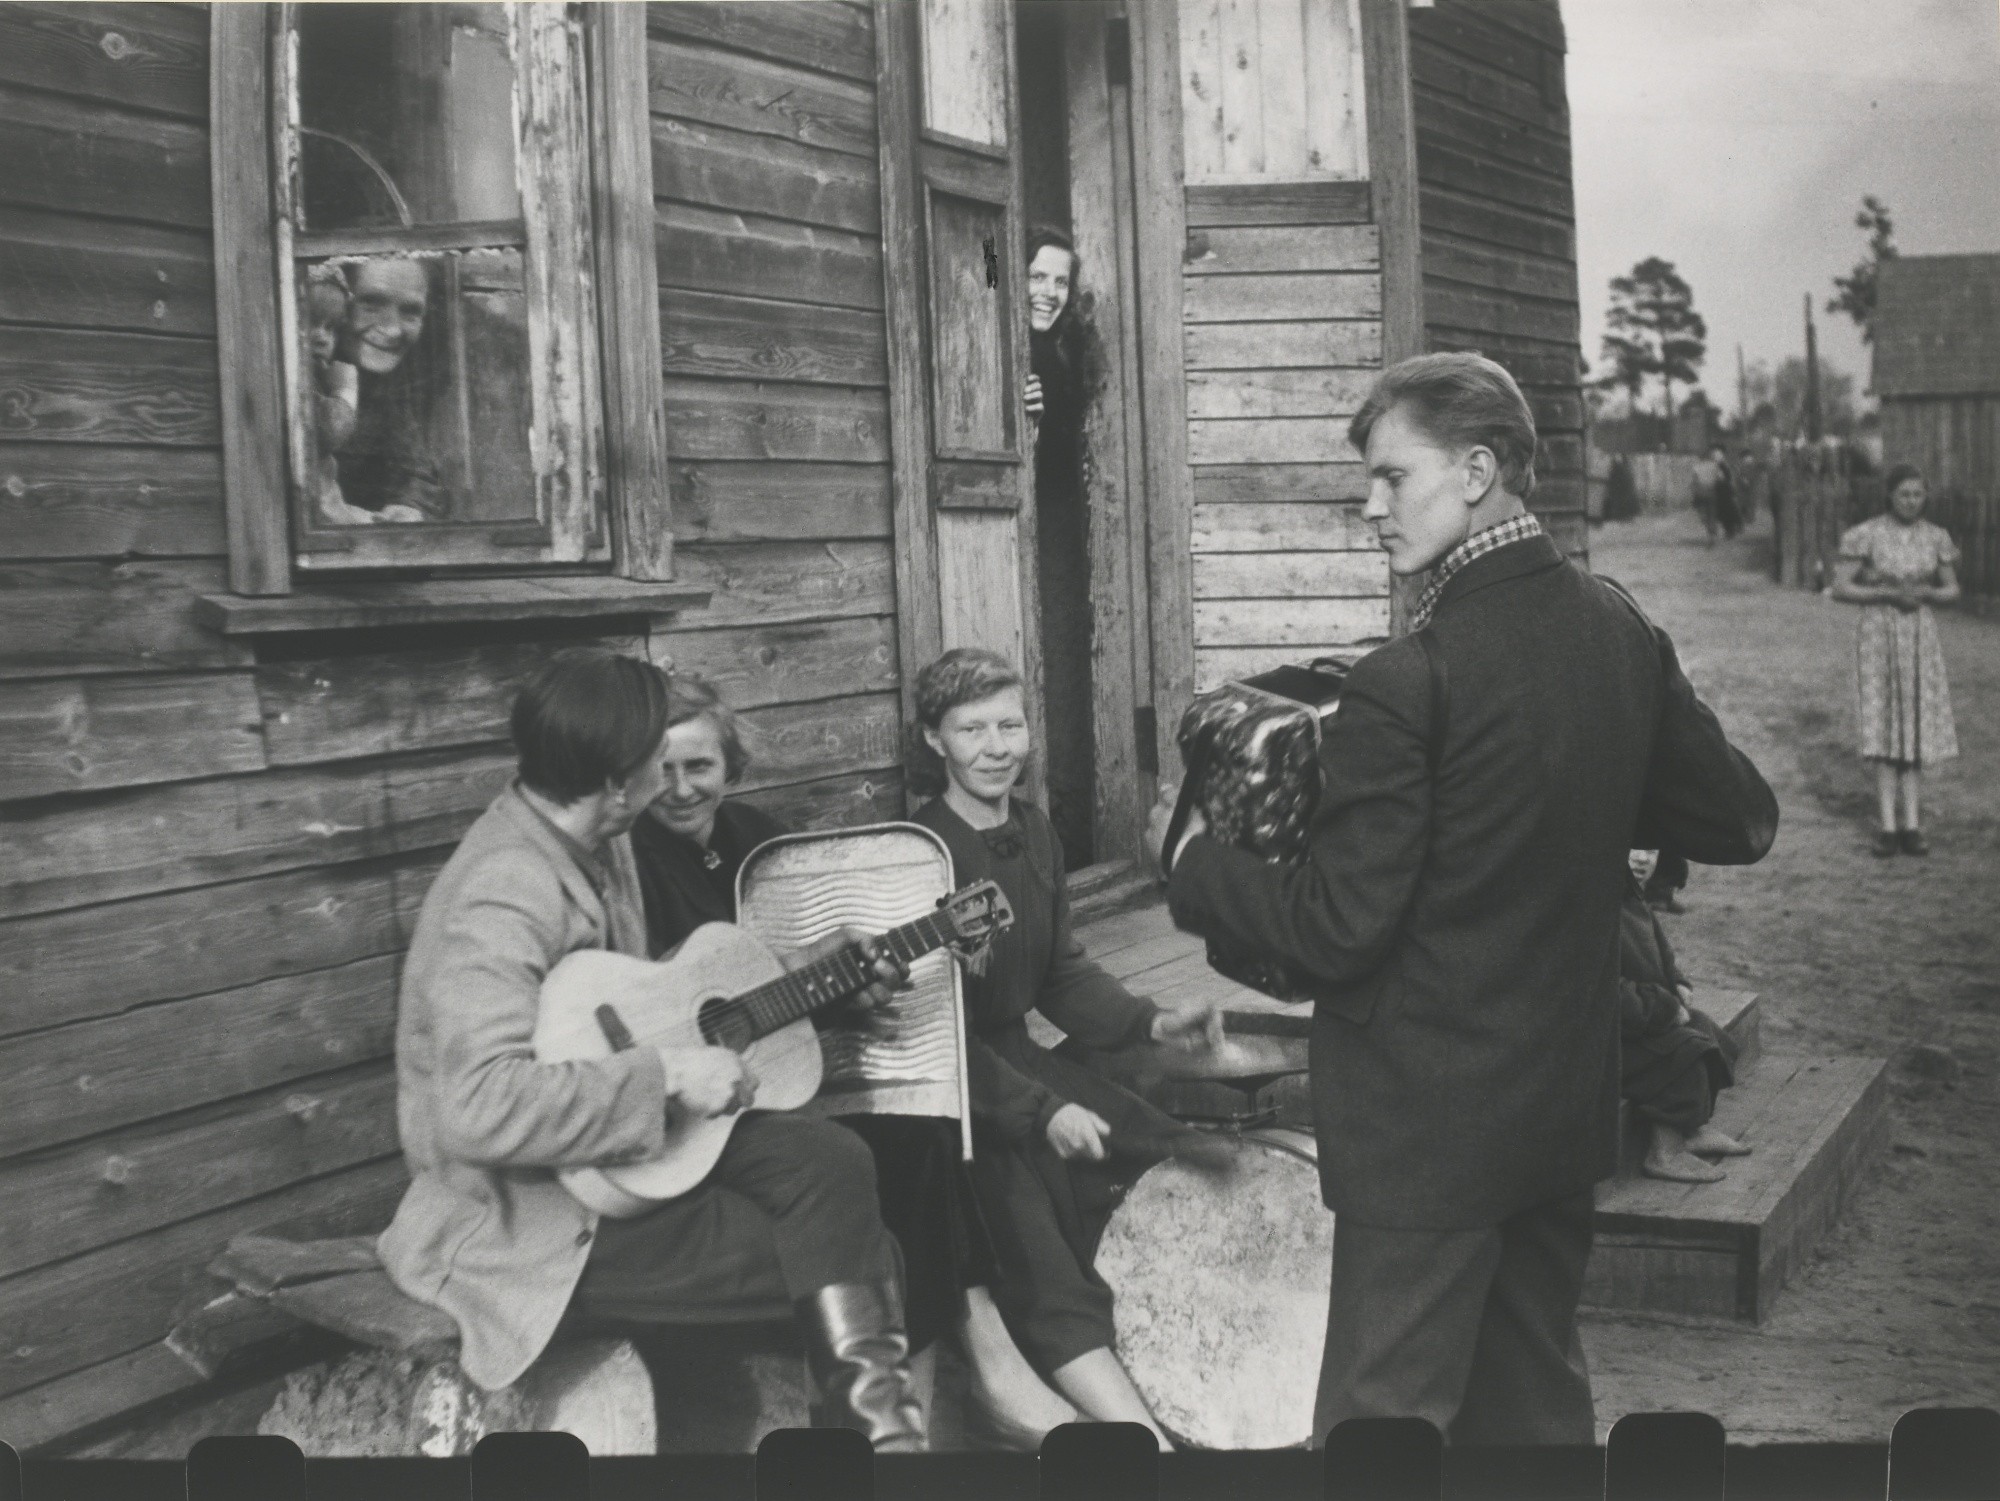 Воскресенье в рабочем поселке Литовская ССР, 1959. Фотограф Антанас Суткус